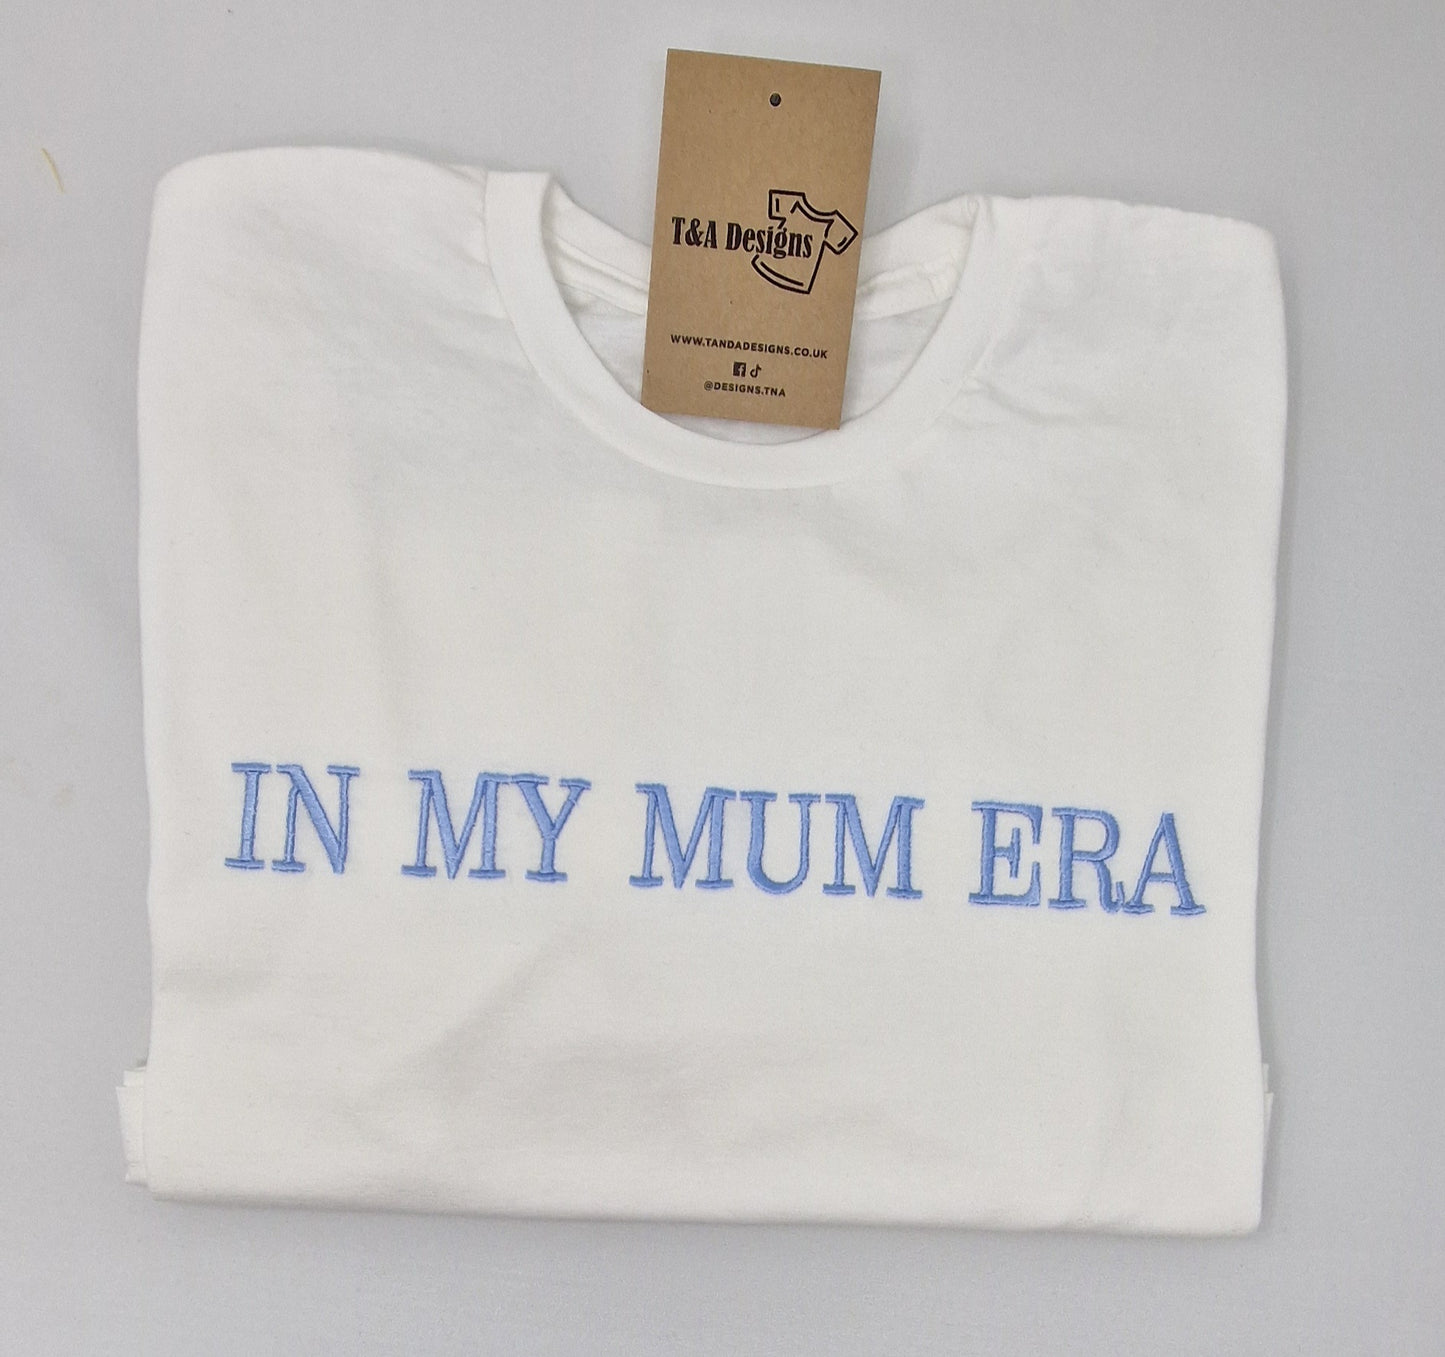 In my Mum Era t-shirt